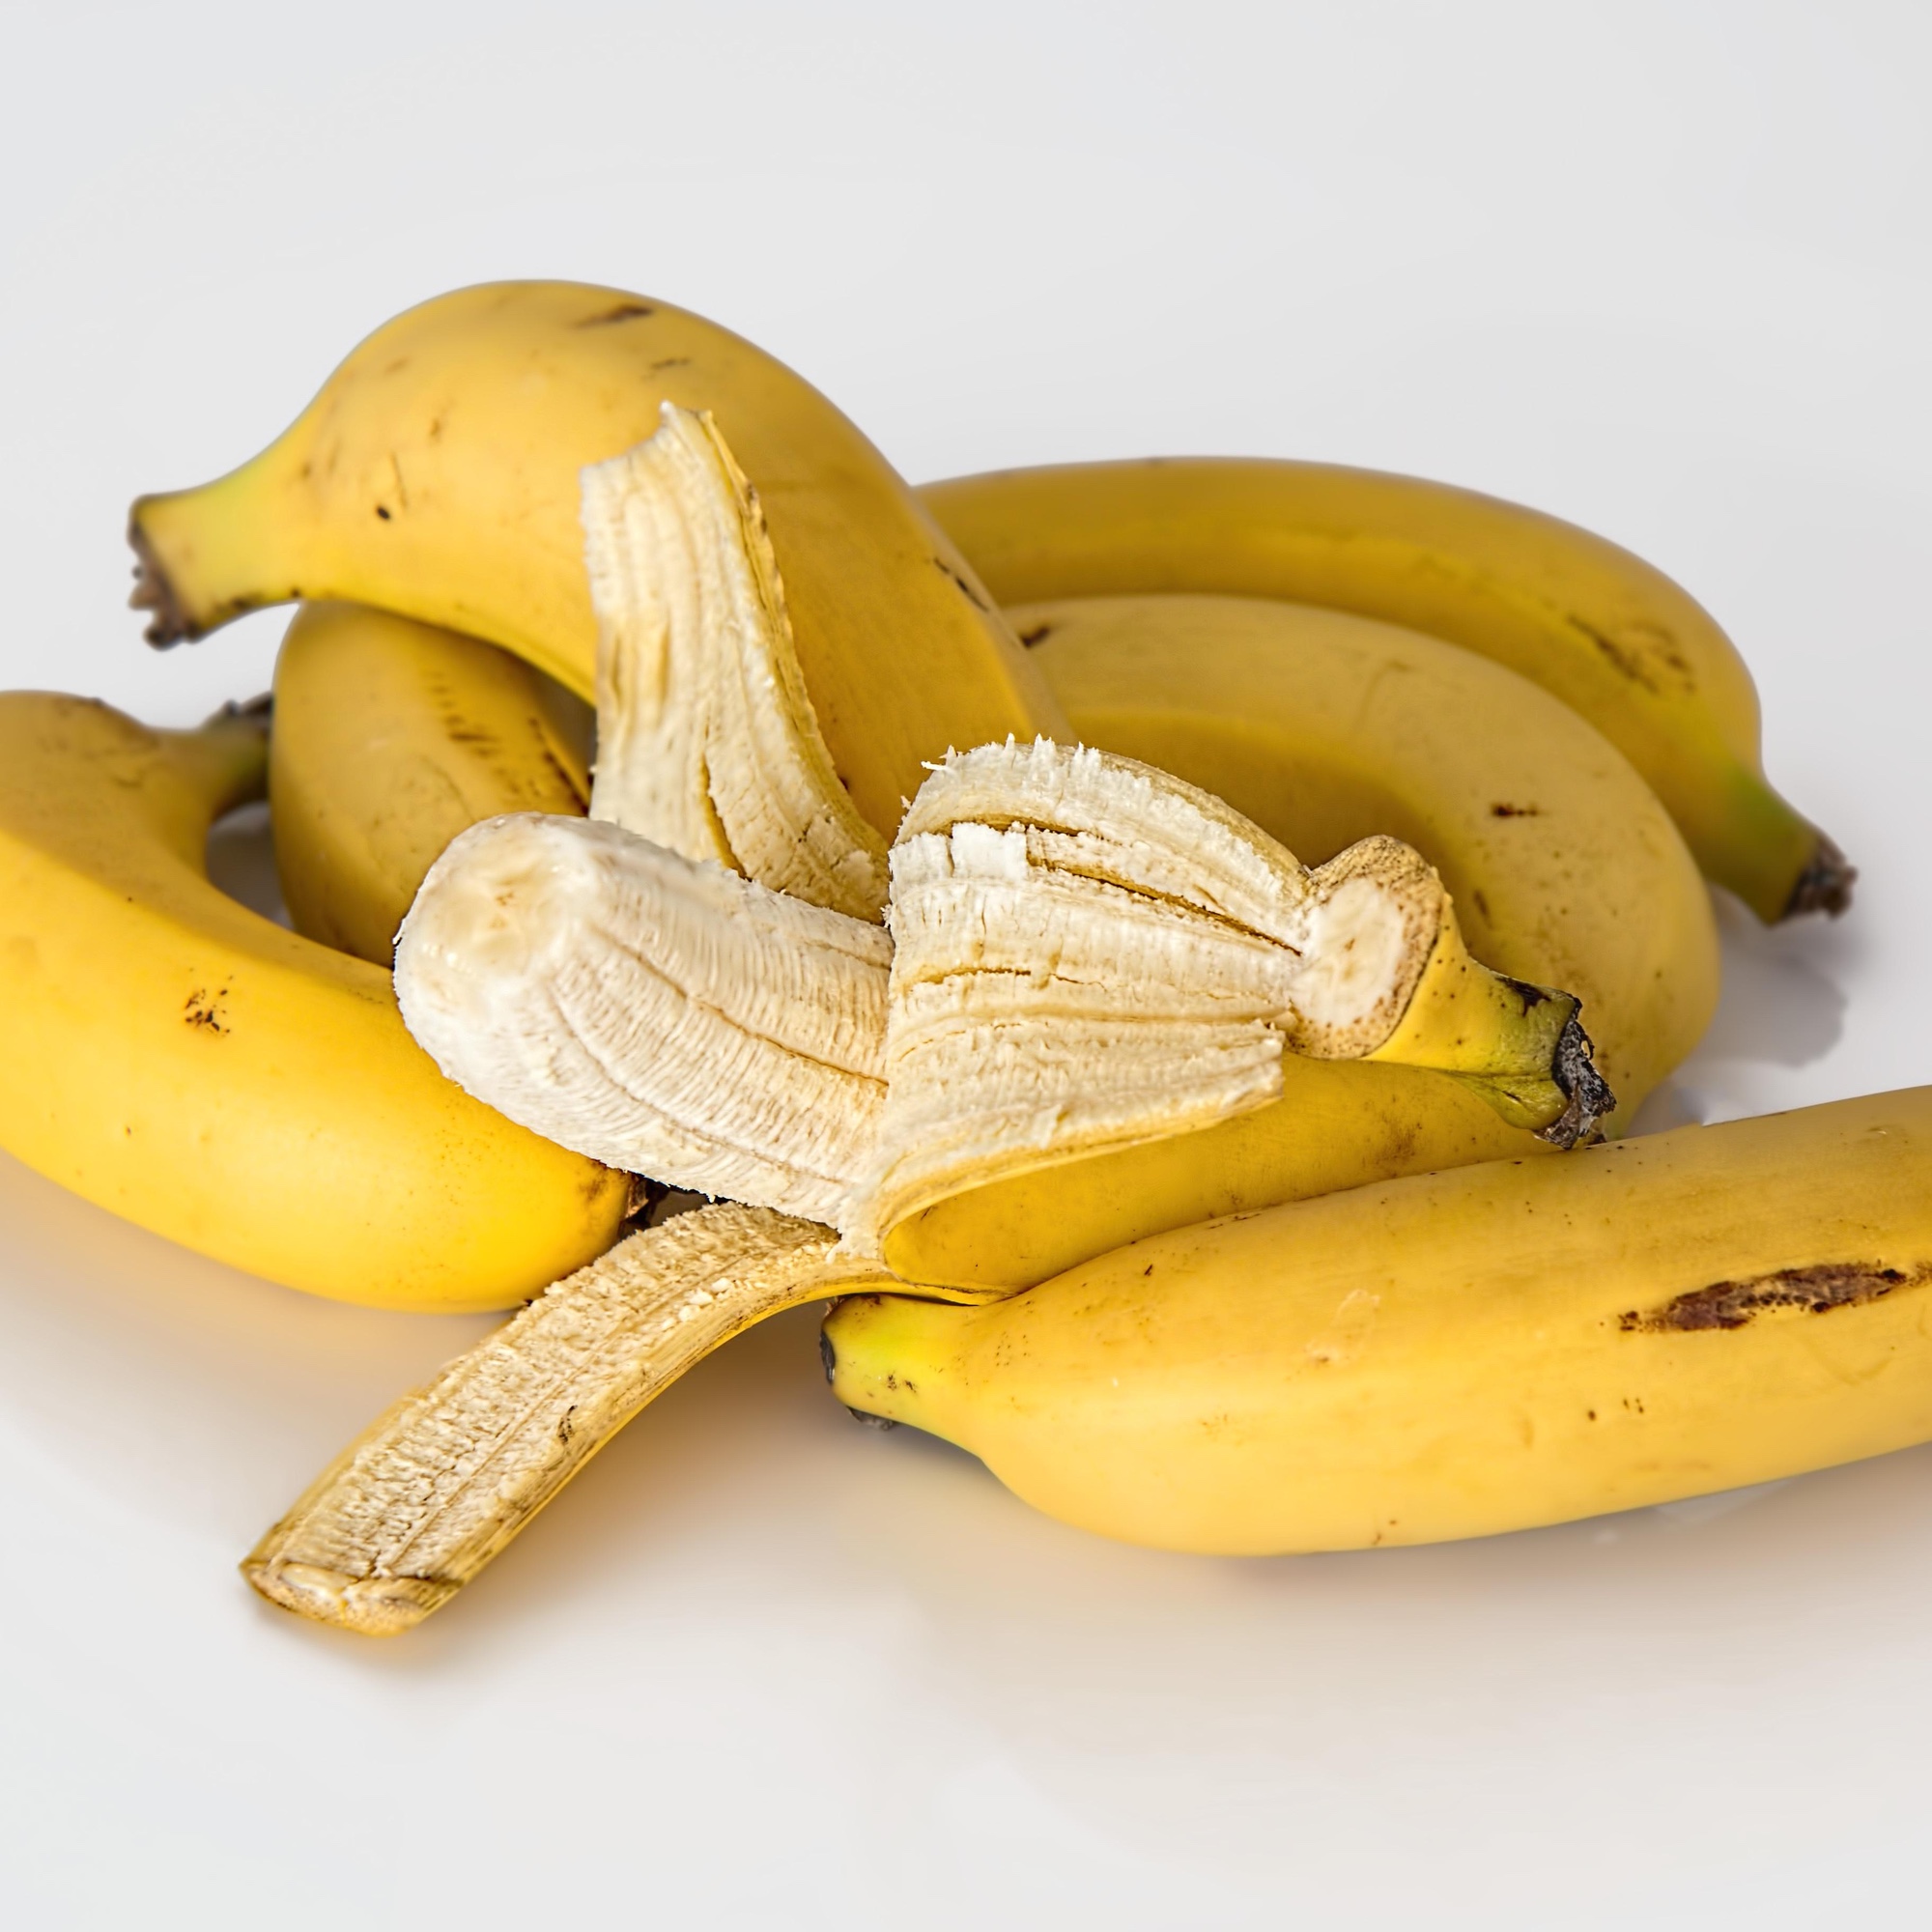 Foto: Bananen, eine davon teilweise geschält